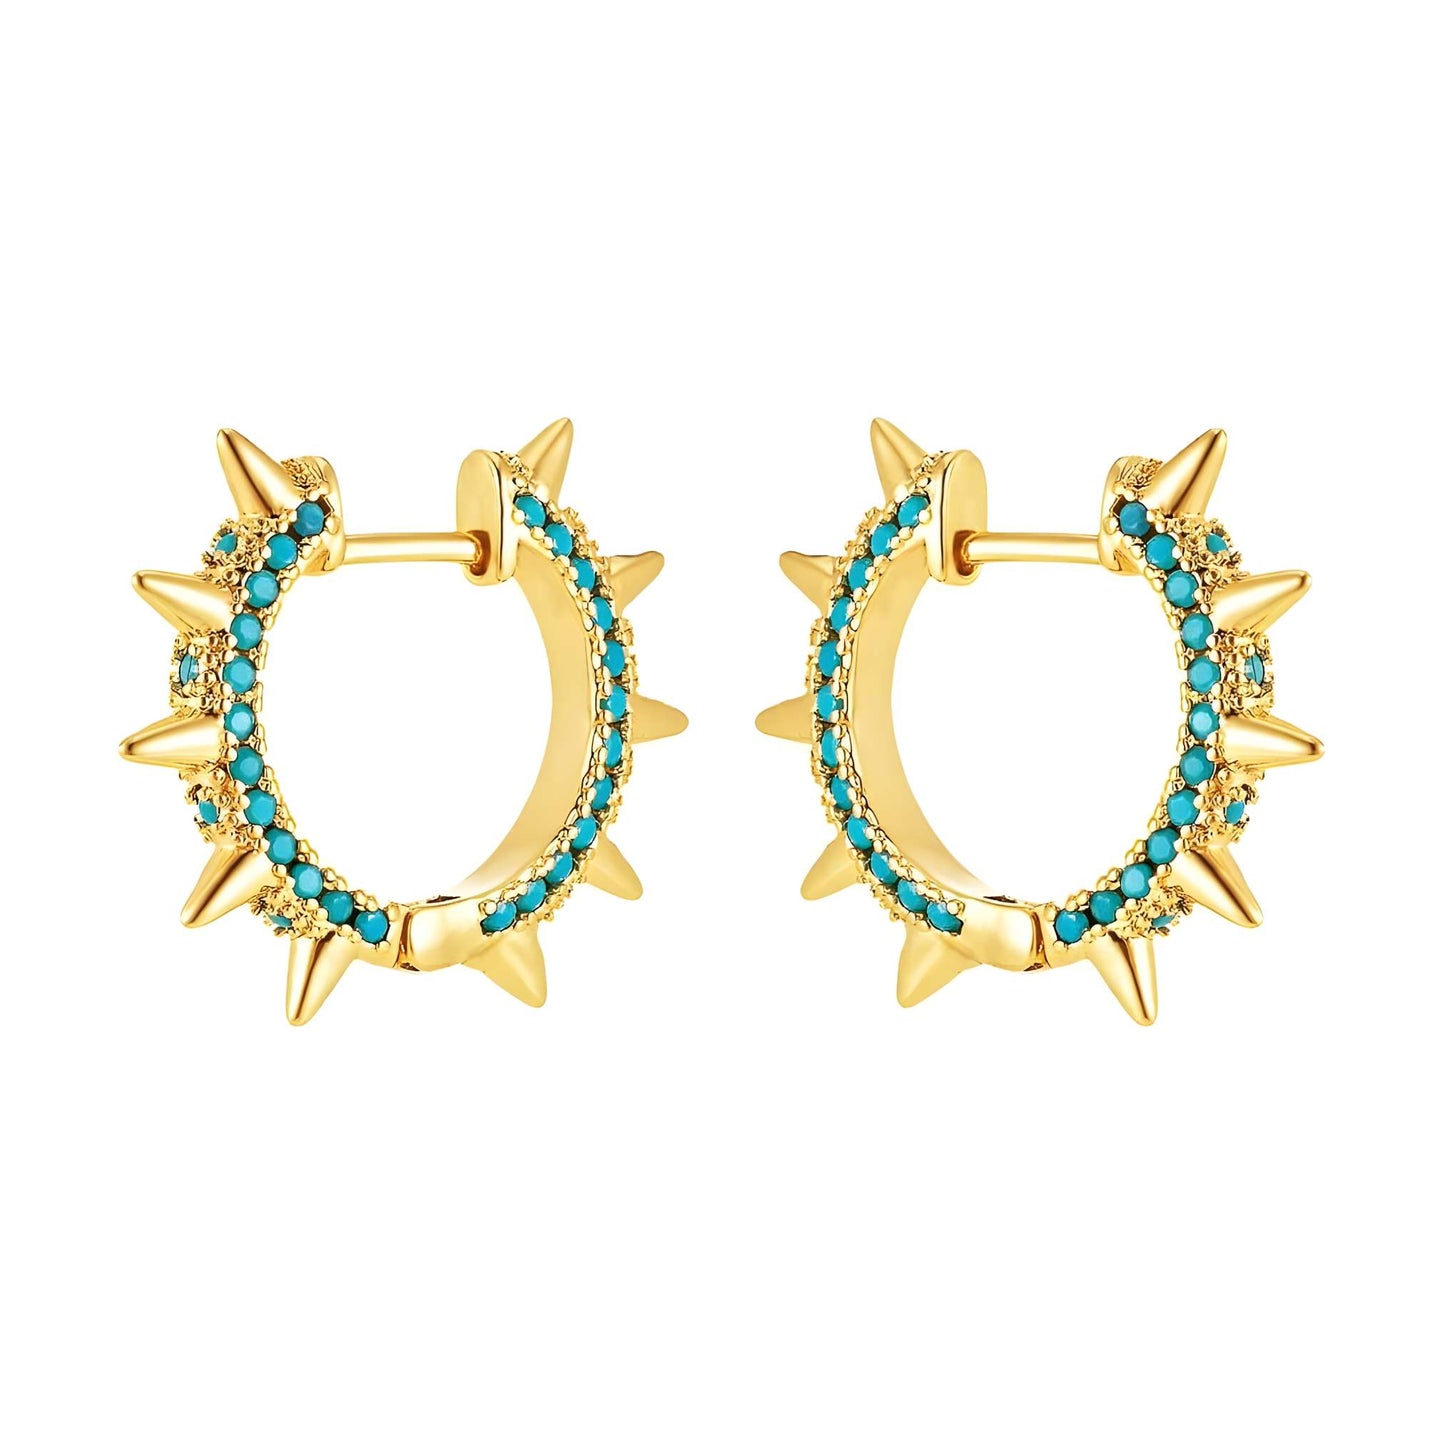 Guinevere Gold-plated Hoop Earrings